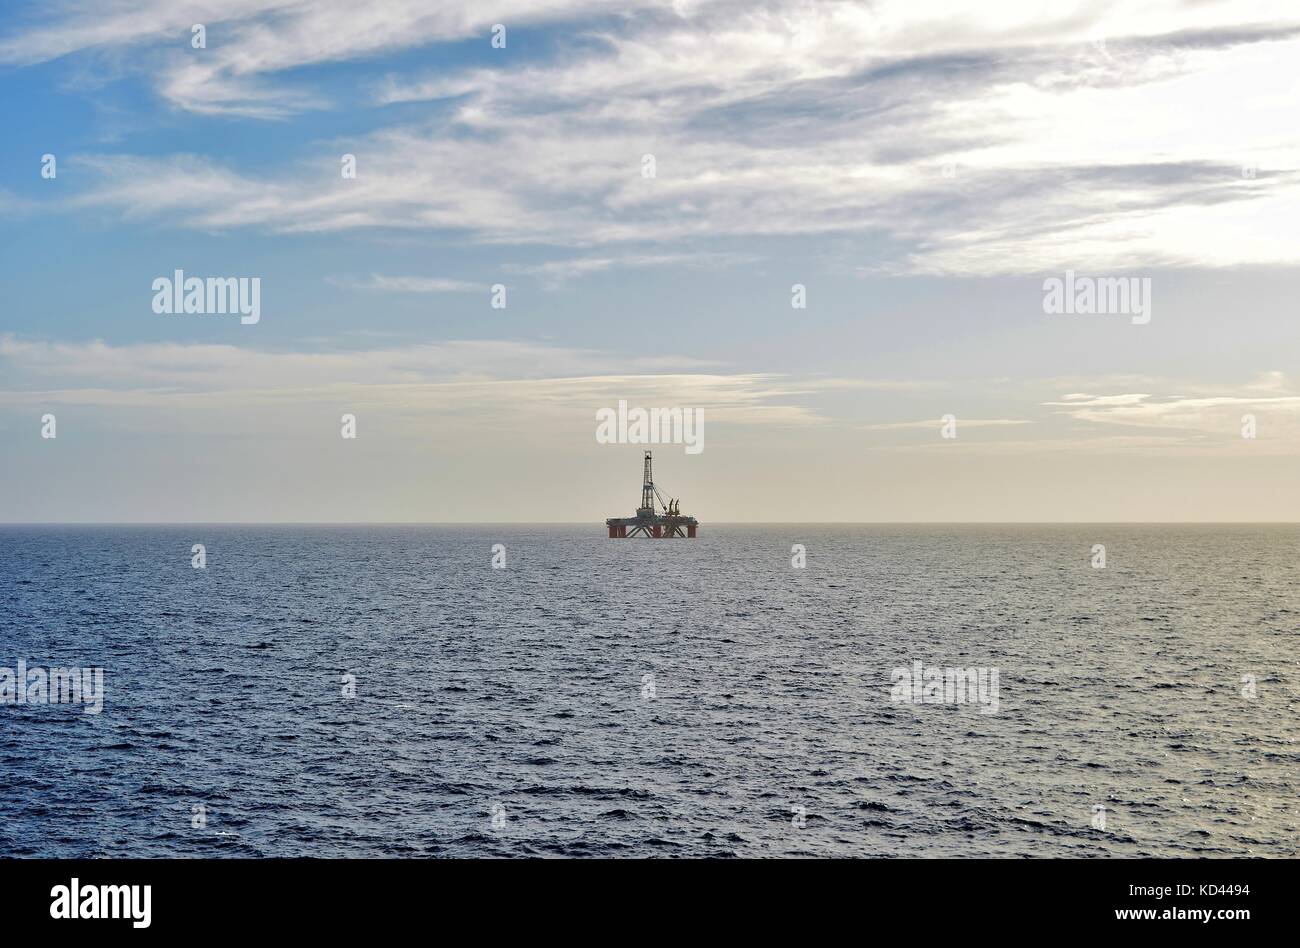 Una plataforma petrolífera inmóvil, de pie en su propio en la distancia, en el horizonte, en un día nublado, frente a las costas de Malta, Islas Maltesas, Mar Mediterráneo Foto de stock